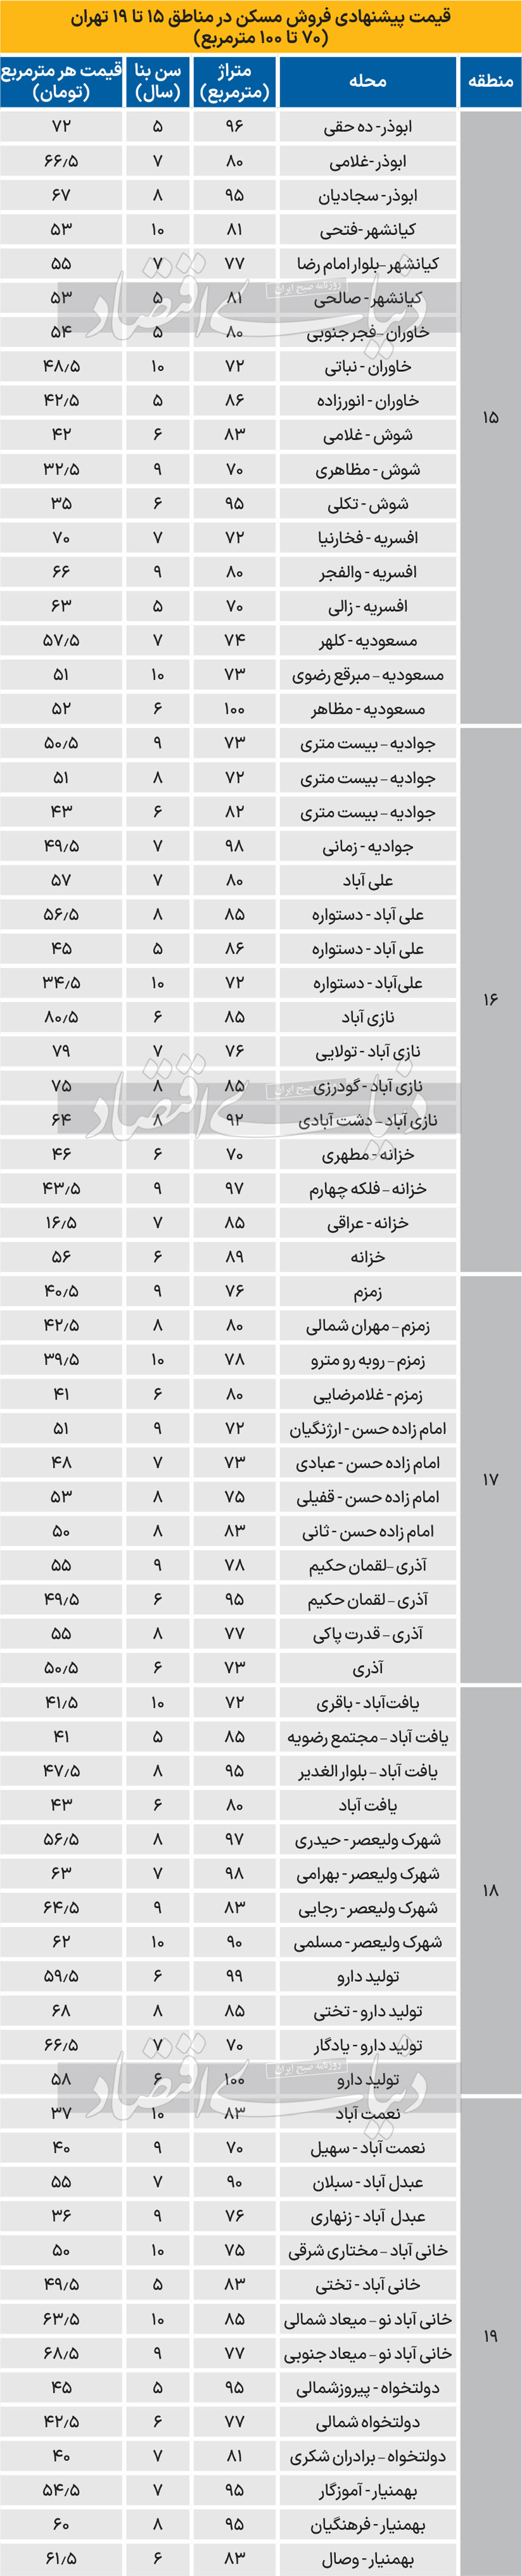 قیمت آپارتمان در 5 منطقه جنوبی تهران + جدول 2